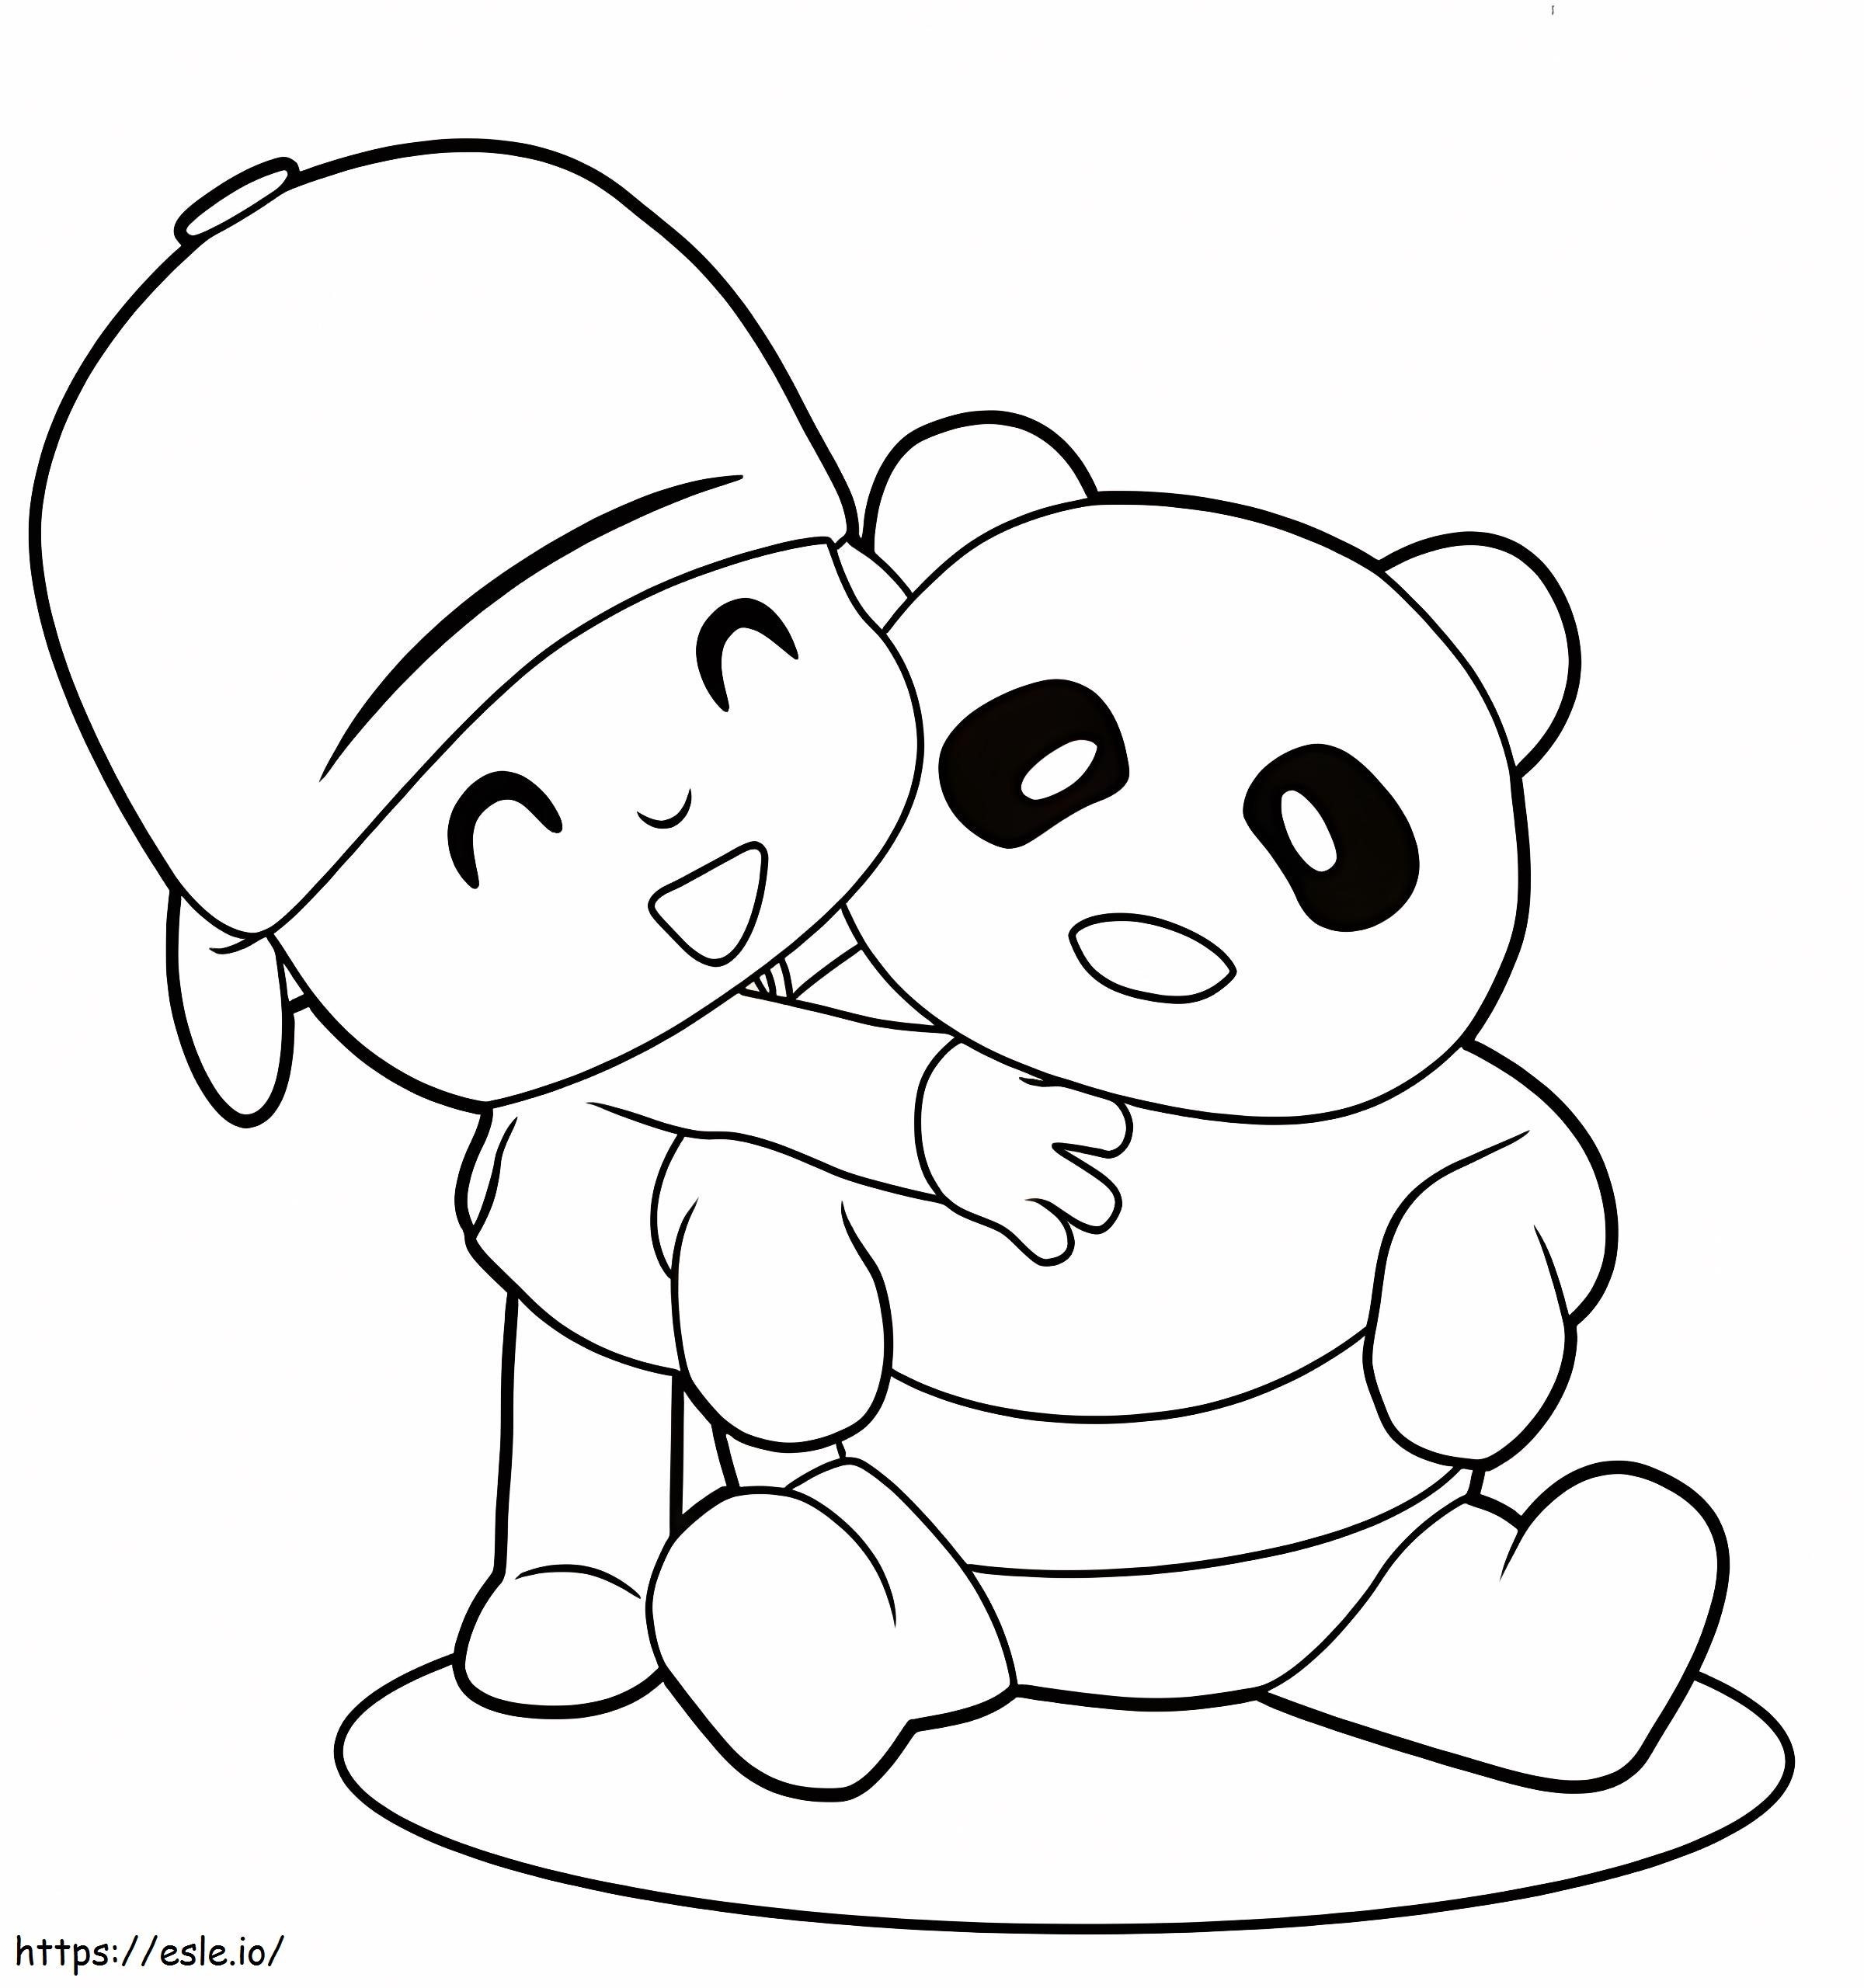 Pocoyo umarmt Panda ausmalbilder